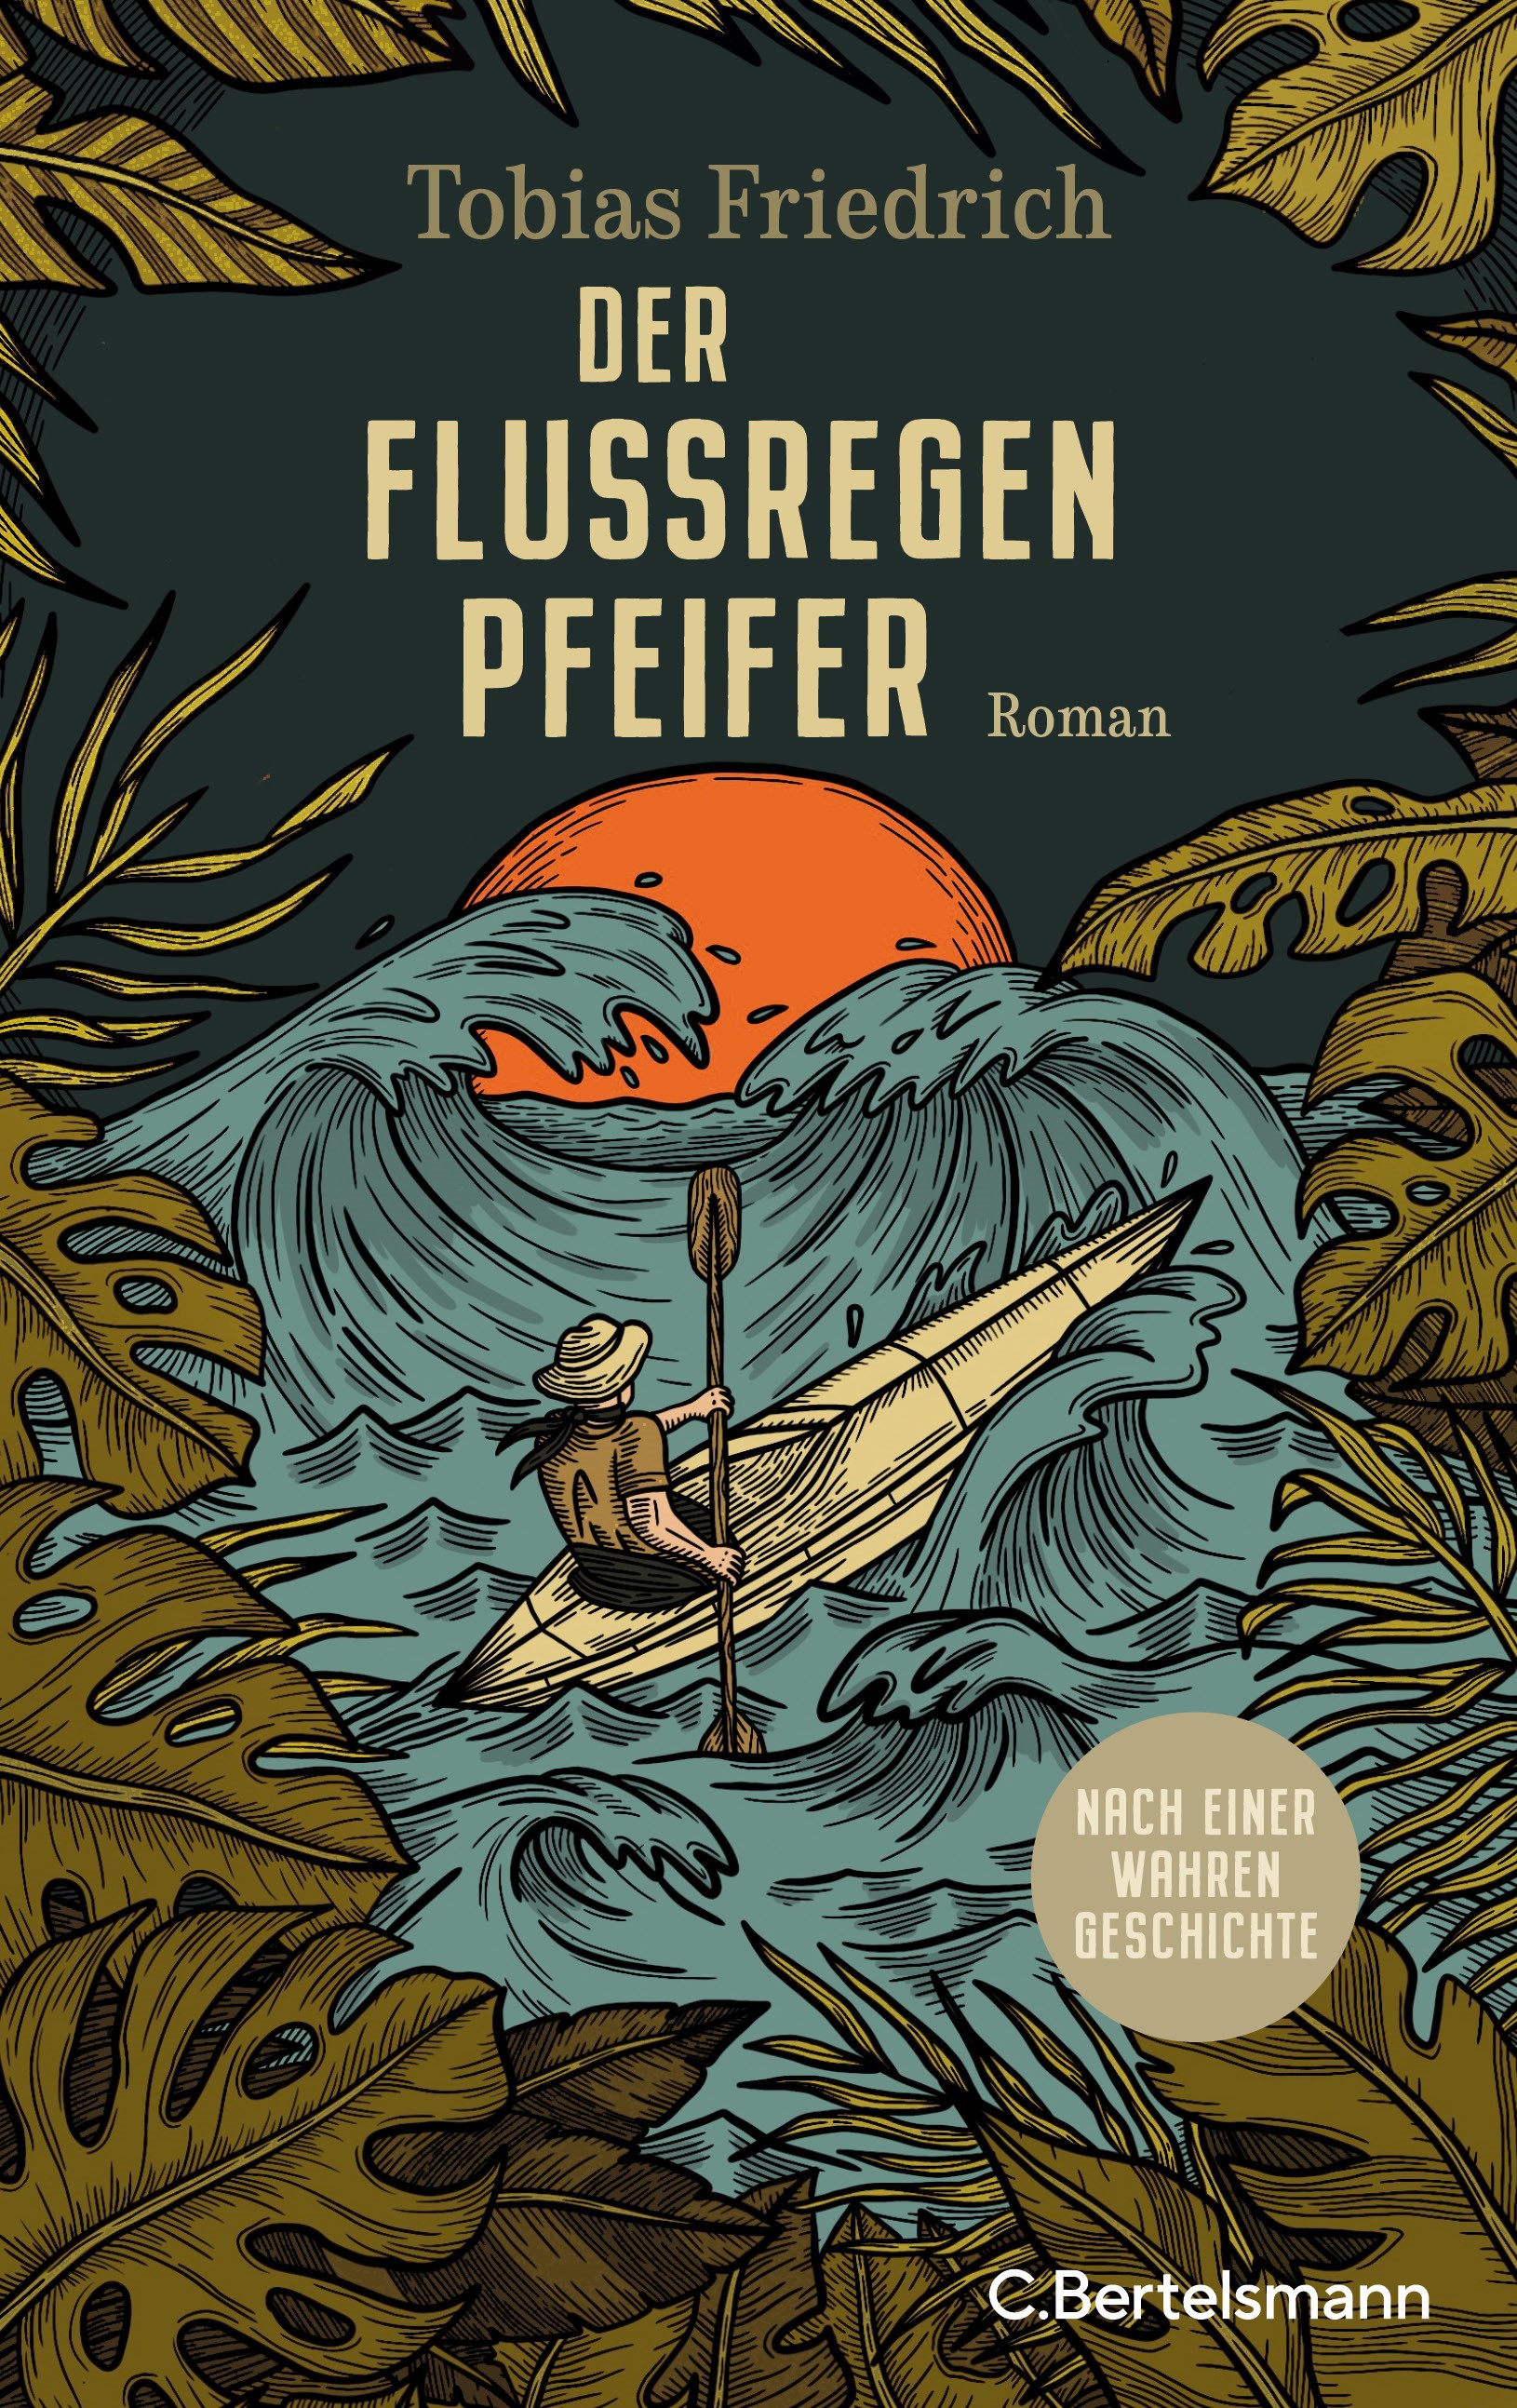 Lesung Tobias Friedrich: "Der Flussregenpfeifer"